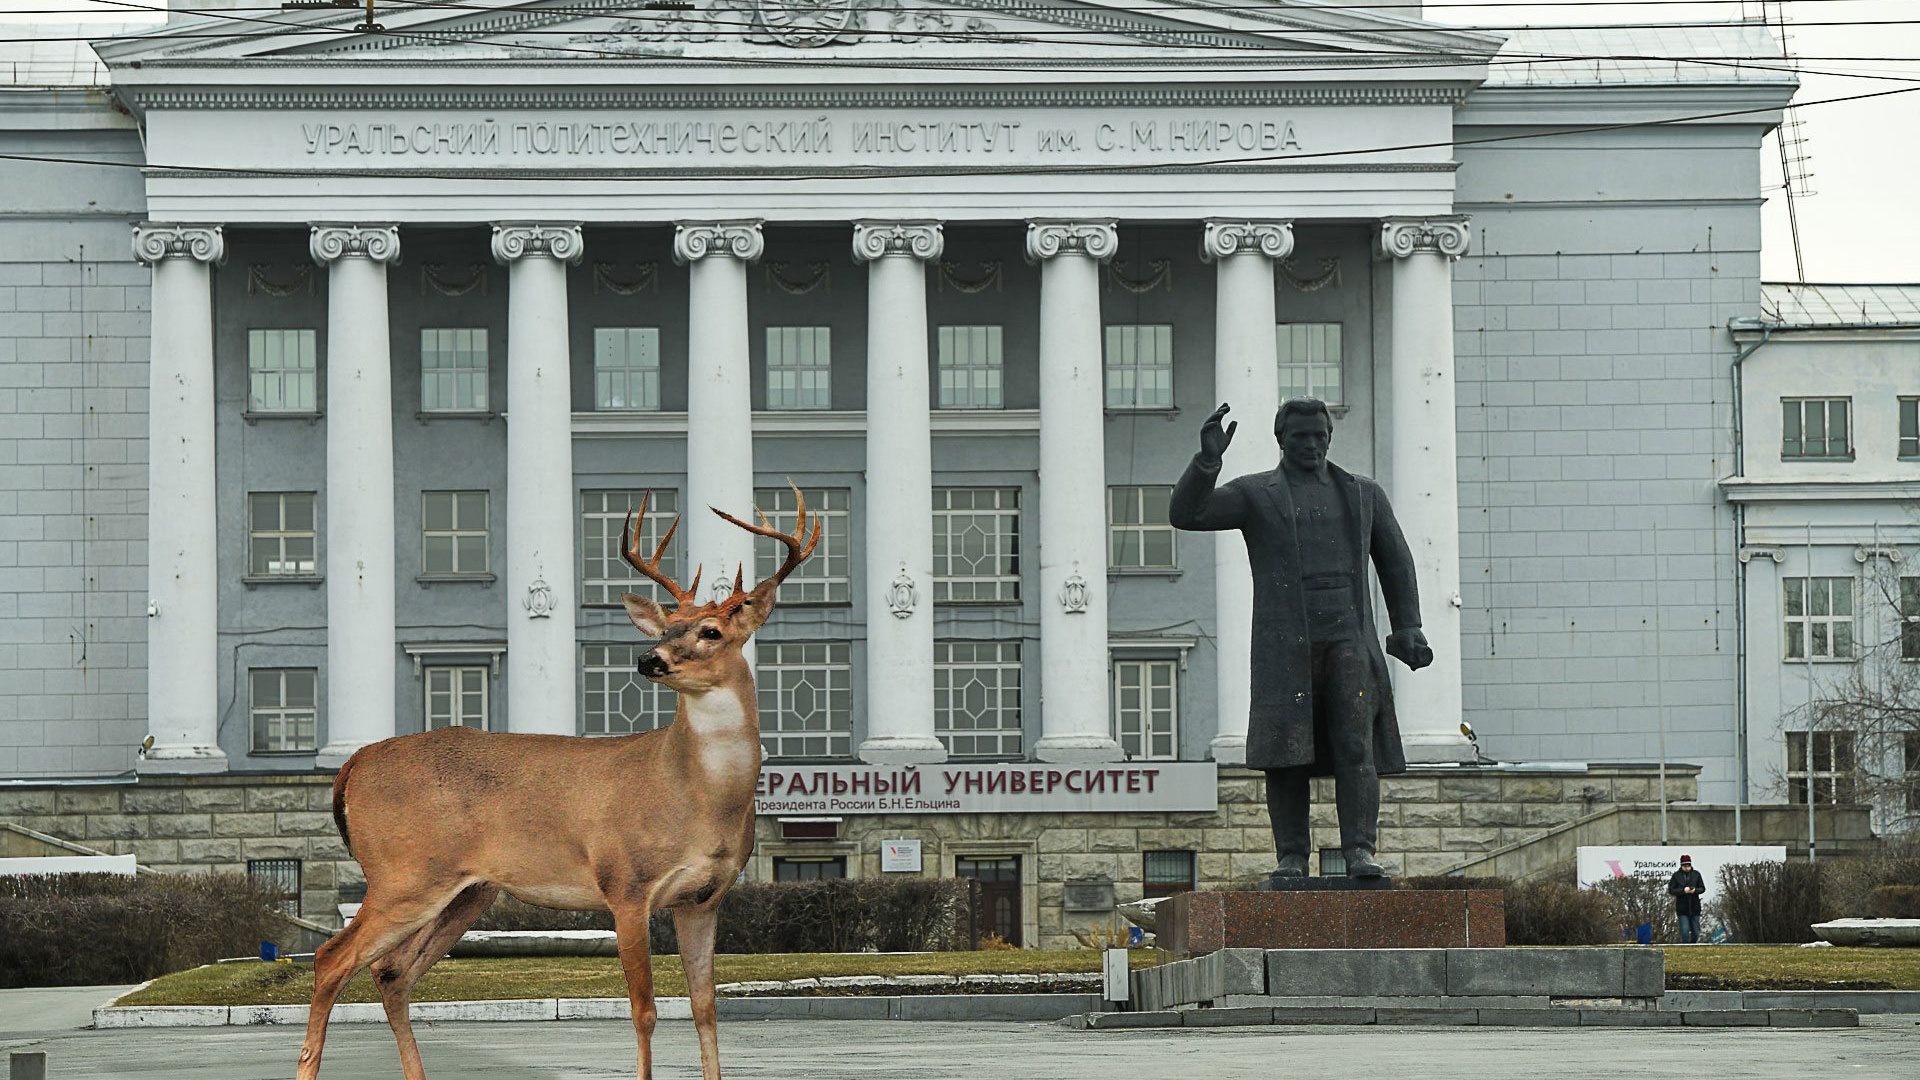 Рысь на 8 Марта и кабаны на Ленина. Как будет выглядеть Екатеринбург, когда превратится в Зверополис